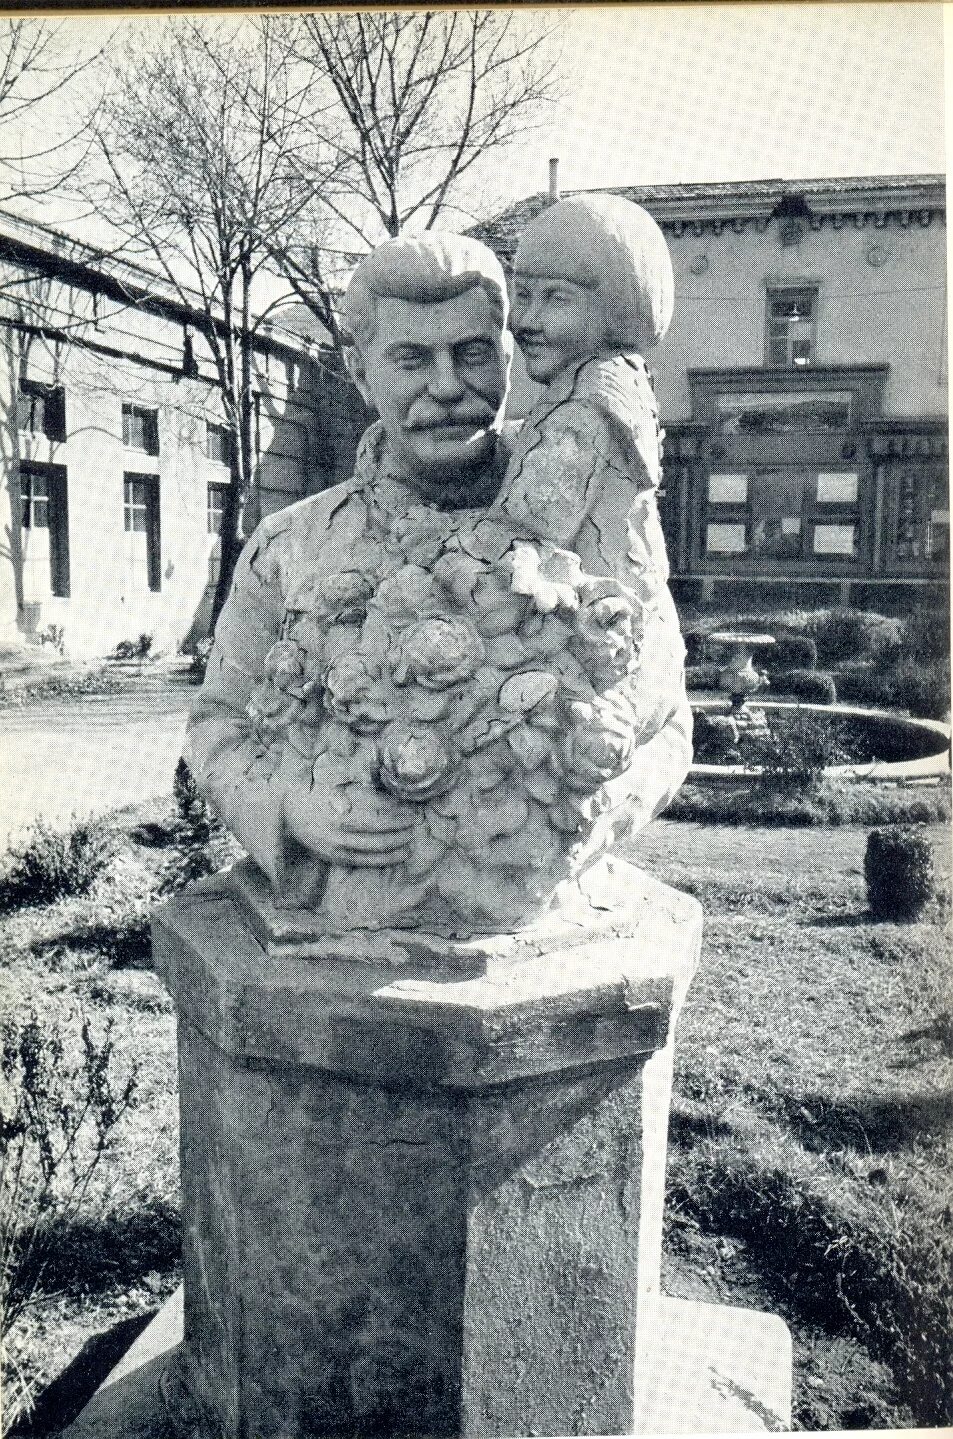 Скульптура Сталин и геля скульптор Лавров. Памятник счастливое детство.